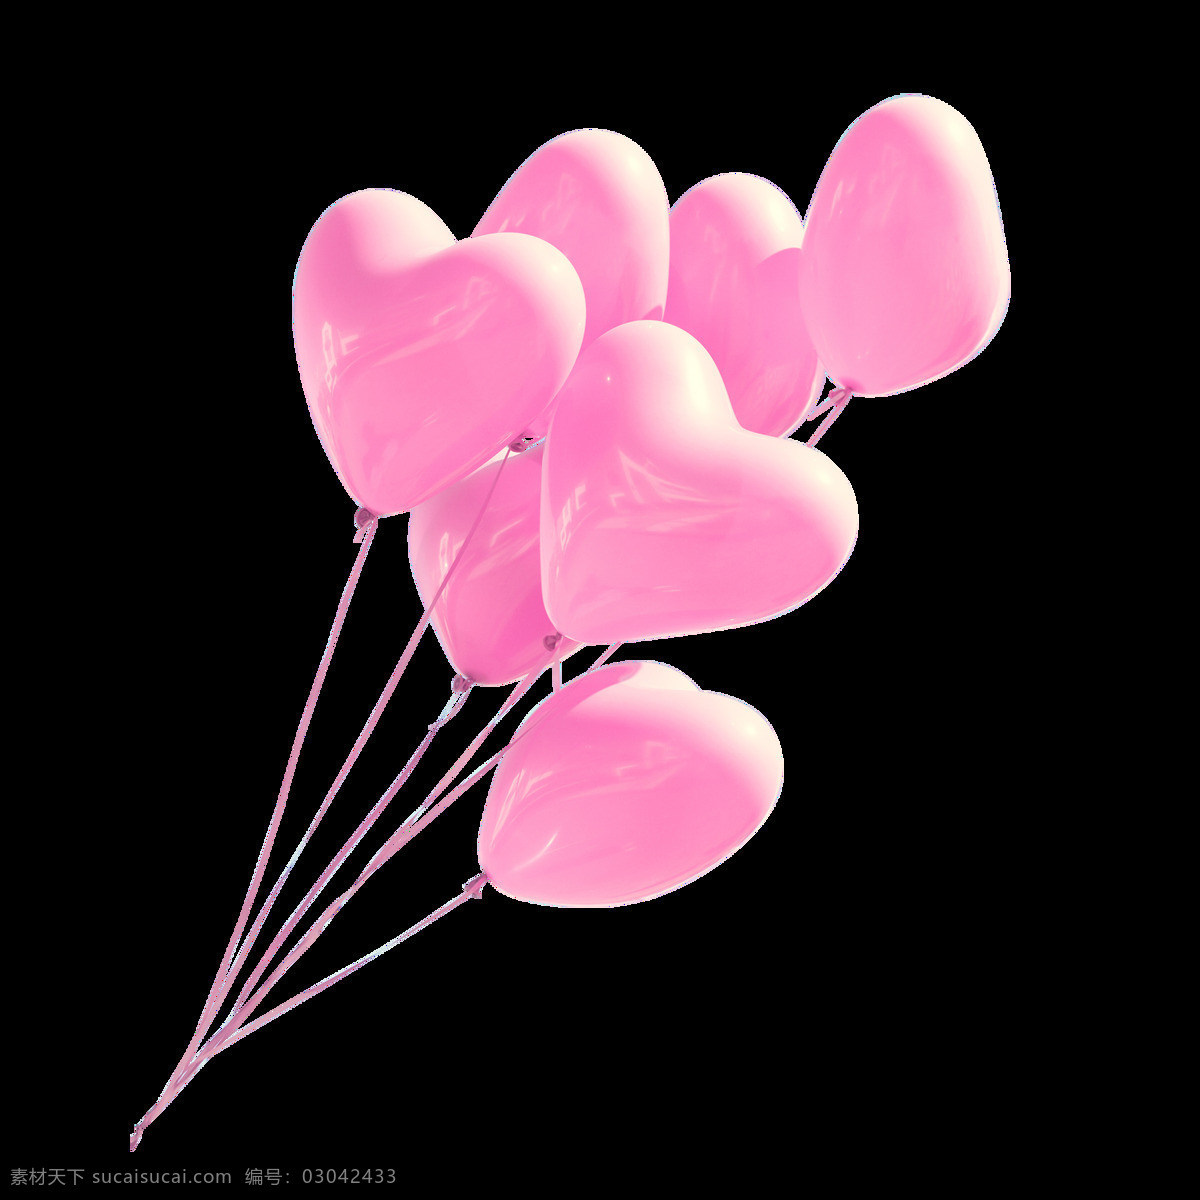 彩绘 粉色 桃 心 气球 元素 png元素 免抠元素 情人节 桃心 透明元素